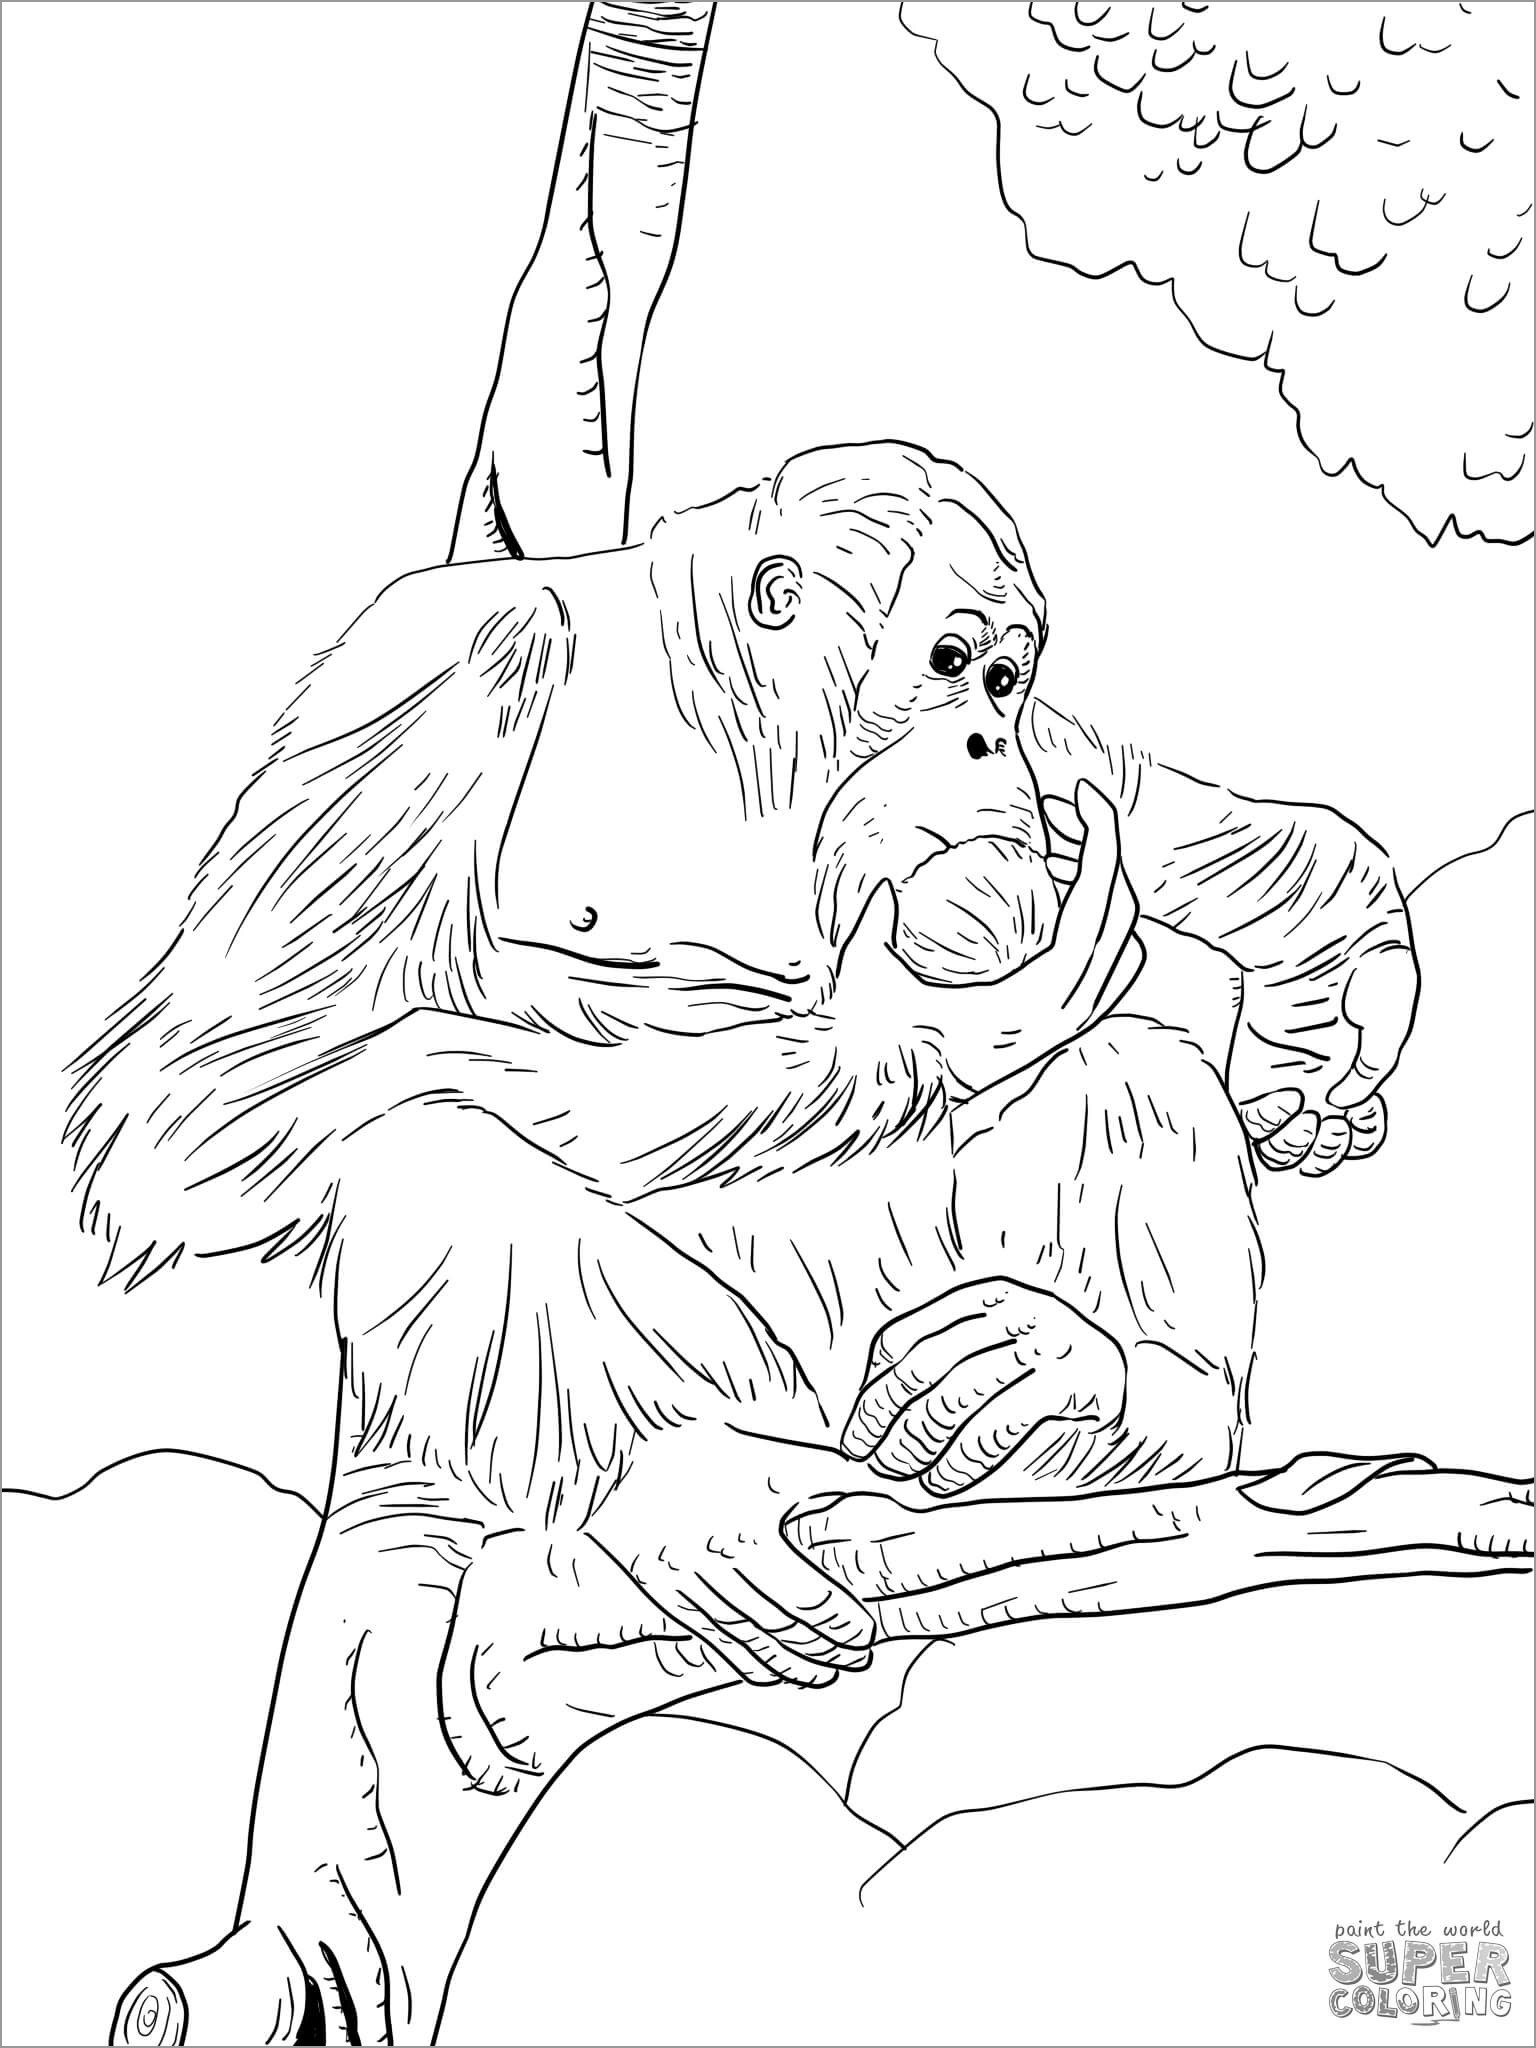 Bornean orangutan Coloring Page